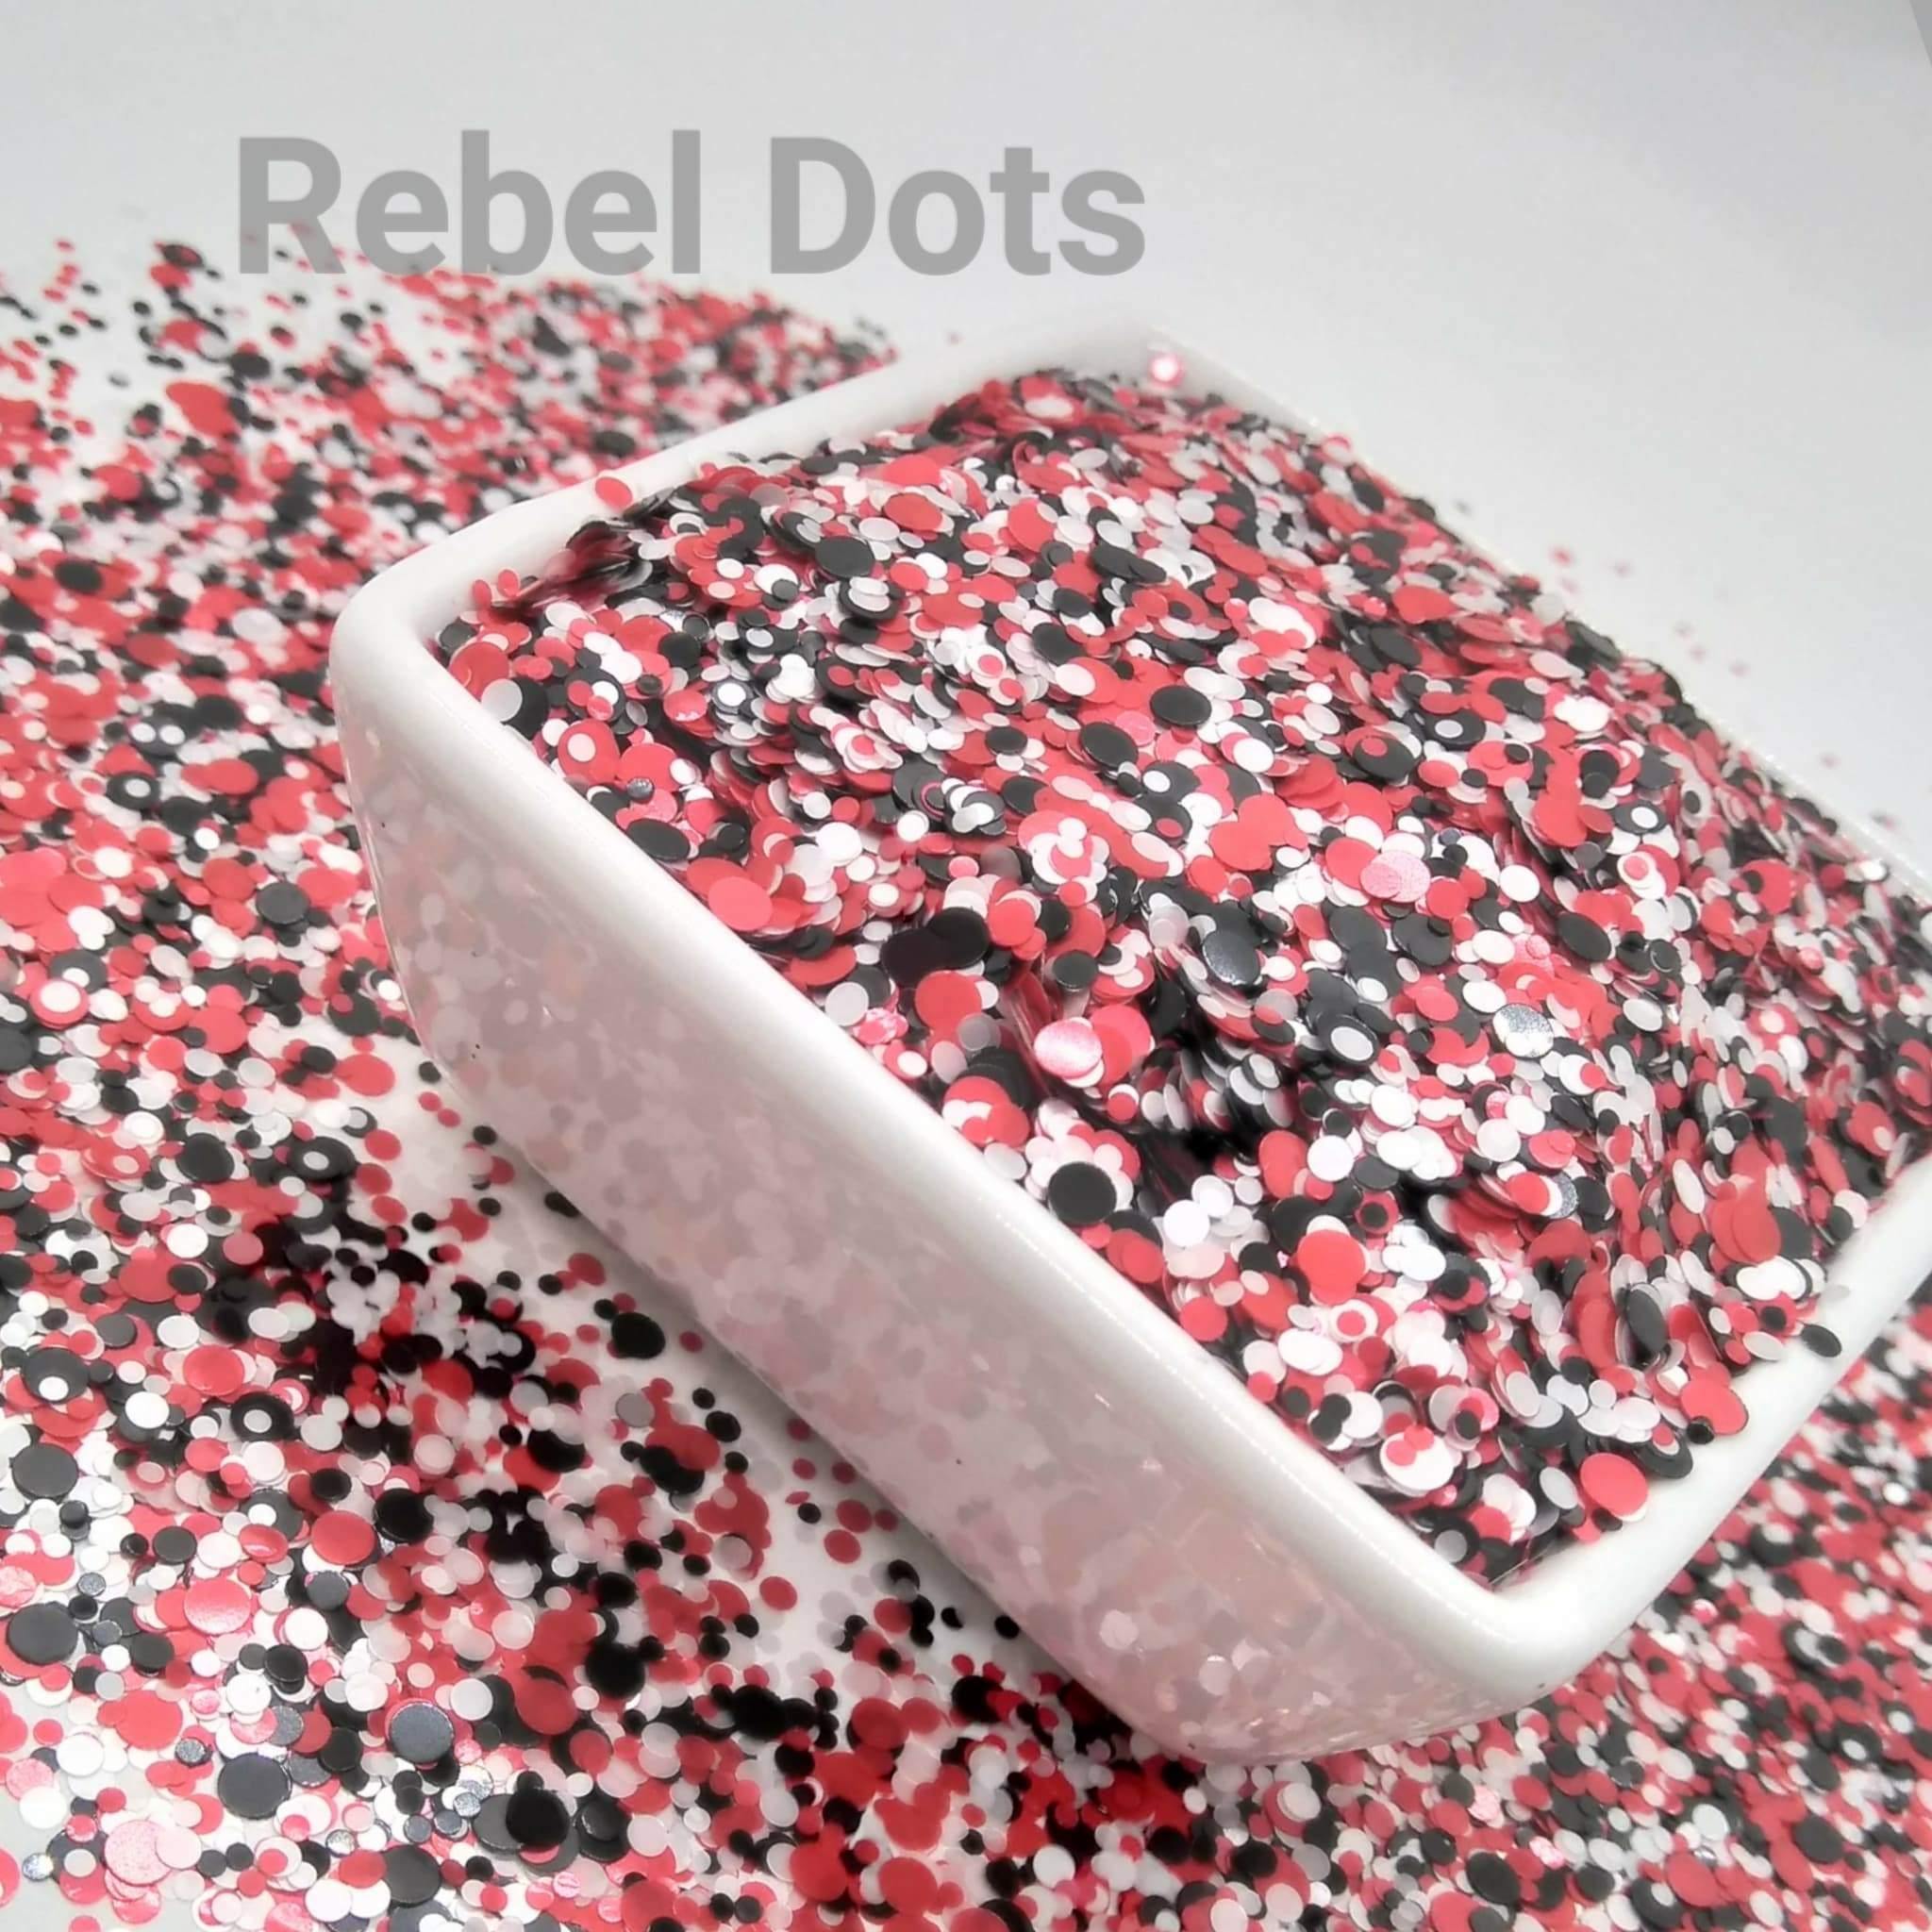 Grams' Glitter House Rebel Dots Polyester Glitter